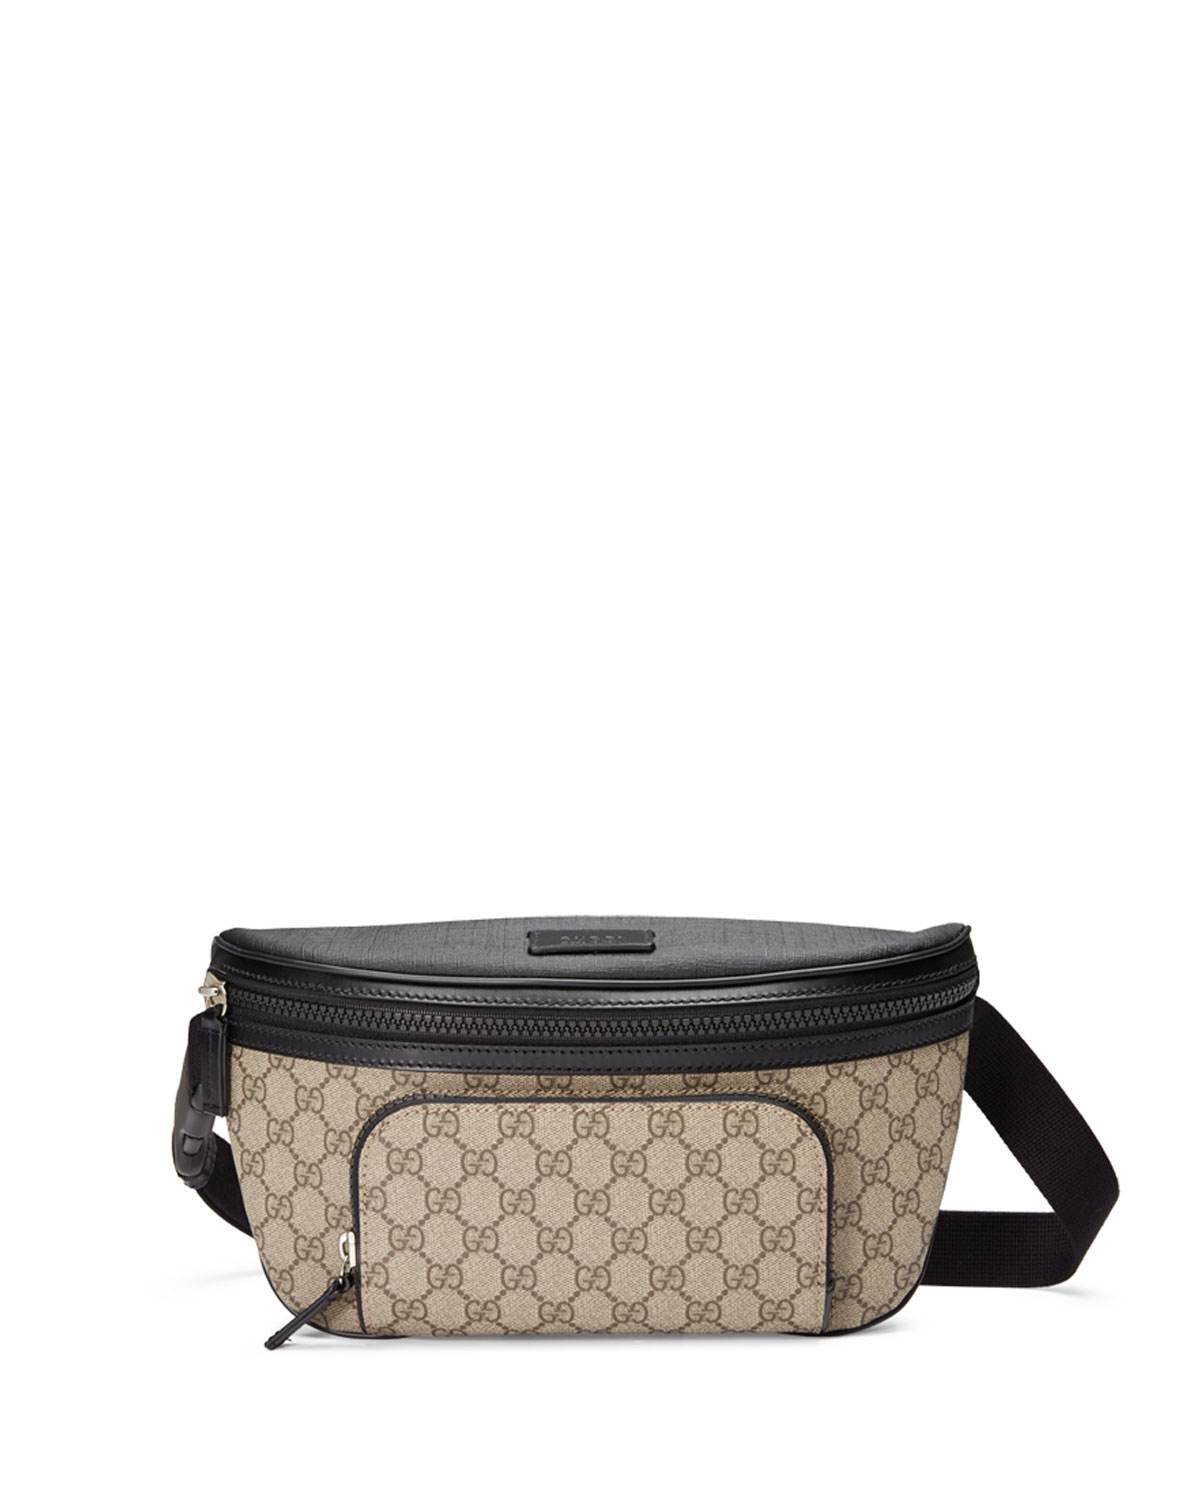 Gucci Eden Gg Supreme Belt Bag in Natural | Lyst